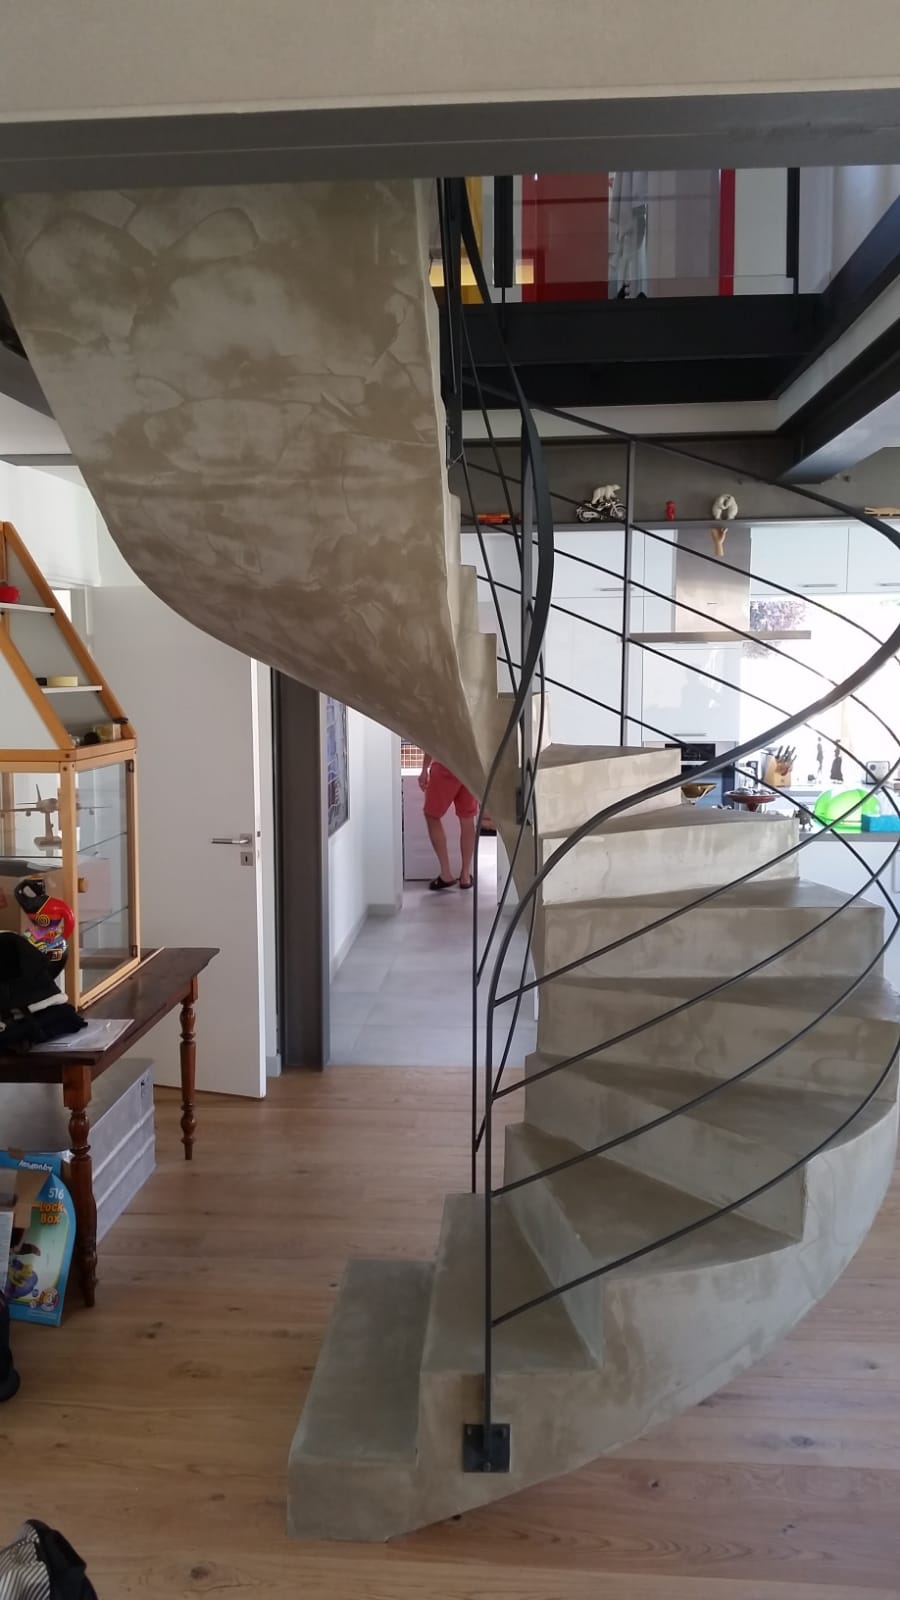 splendide escalier hélicoïdal comme une œuvre d'art en rénovation à toulouse pour un architecte